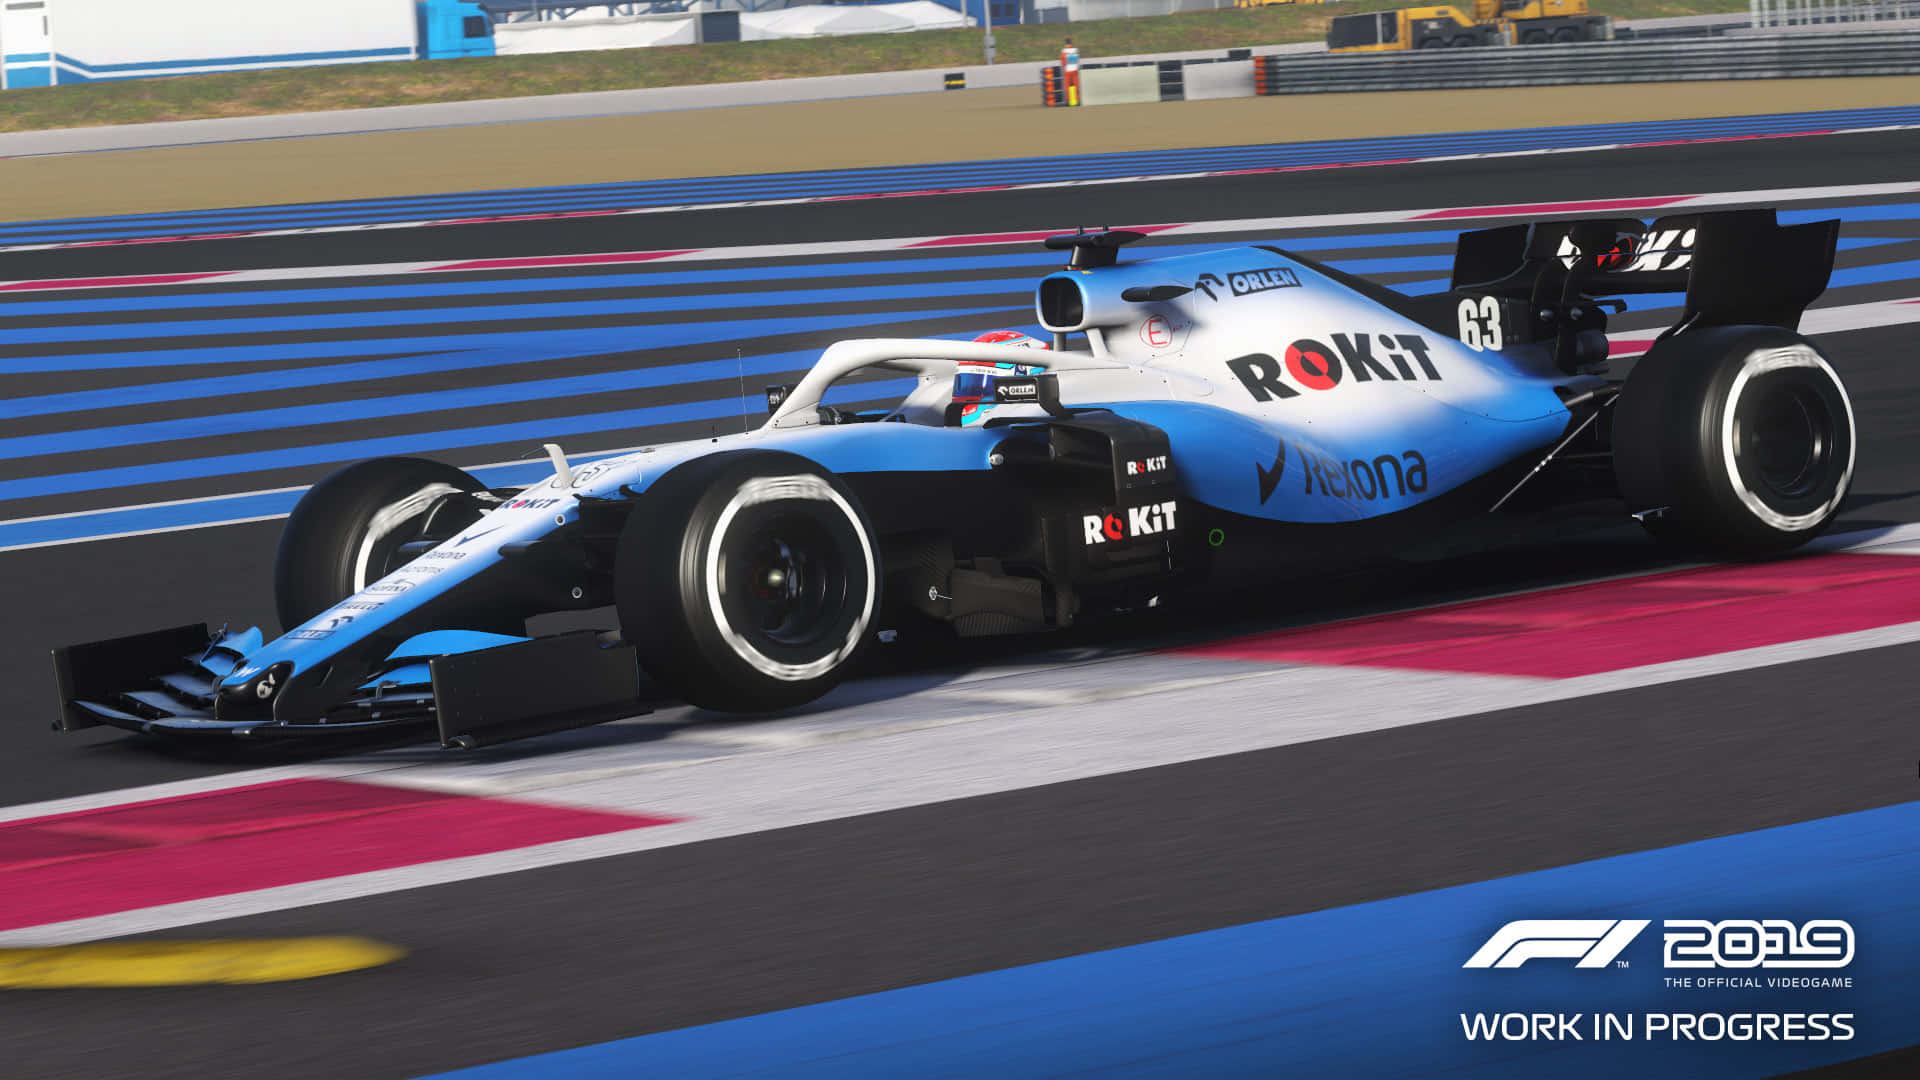 Fondode Pantalla En Alta Definición De Williams Fw24 En Azul Y Blanco De La Temporada De F1 2019.